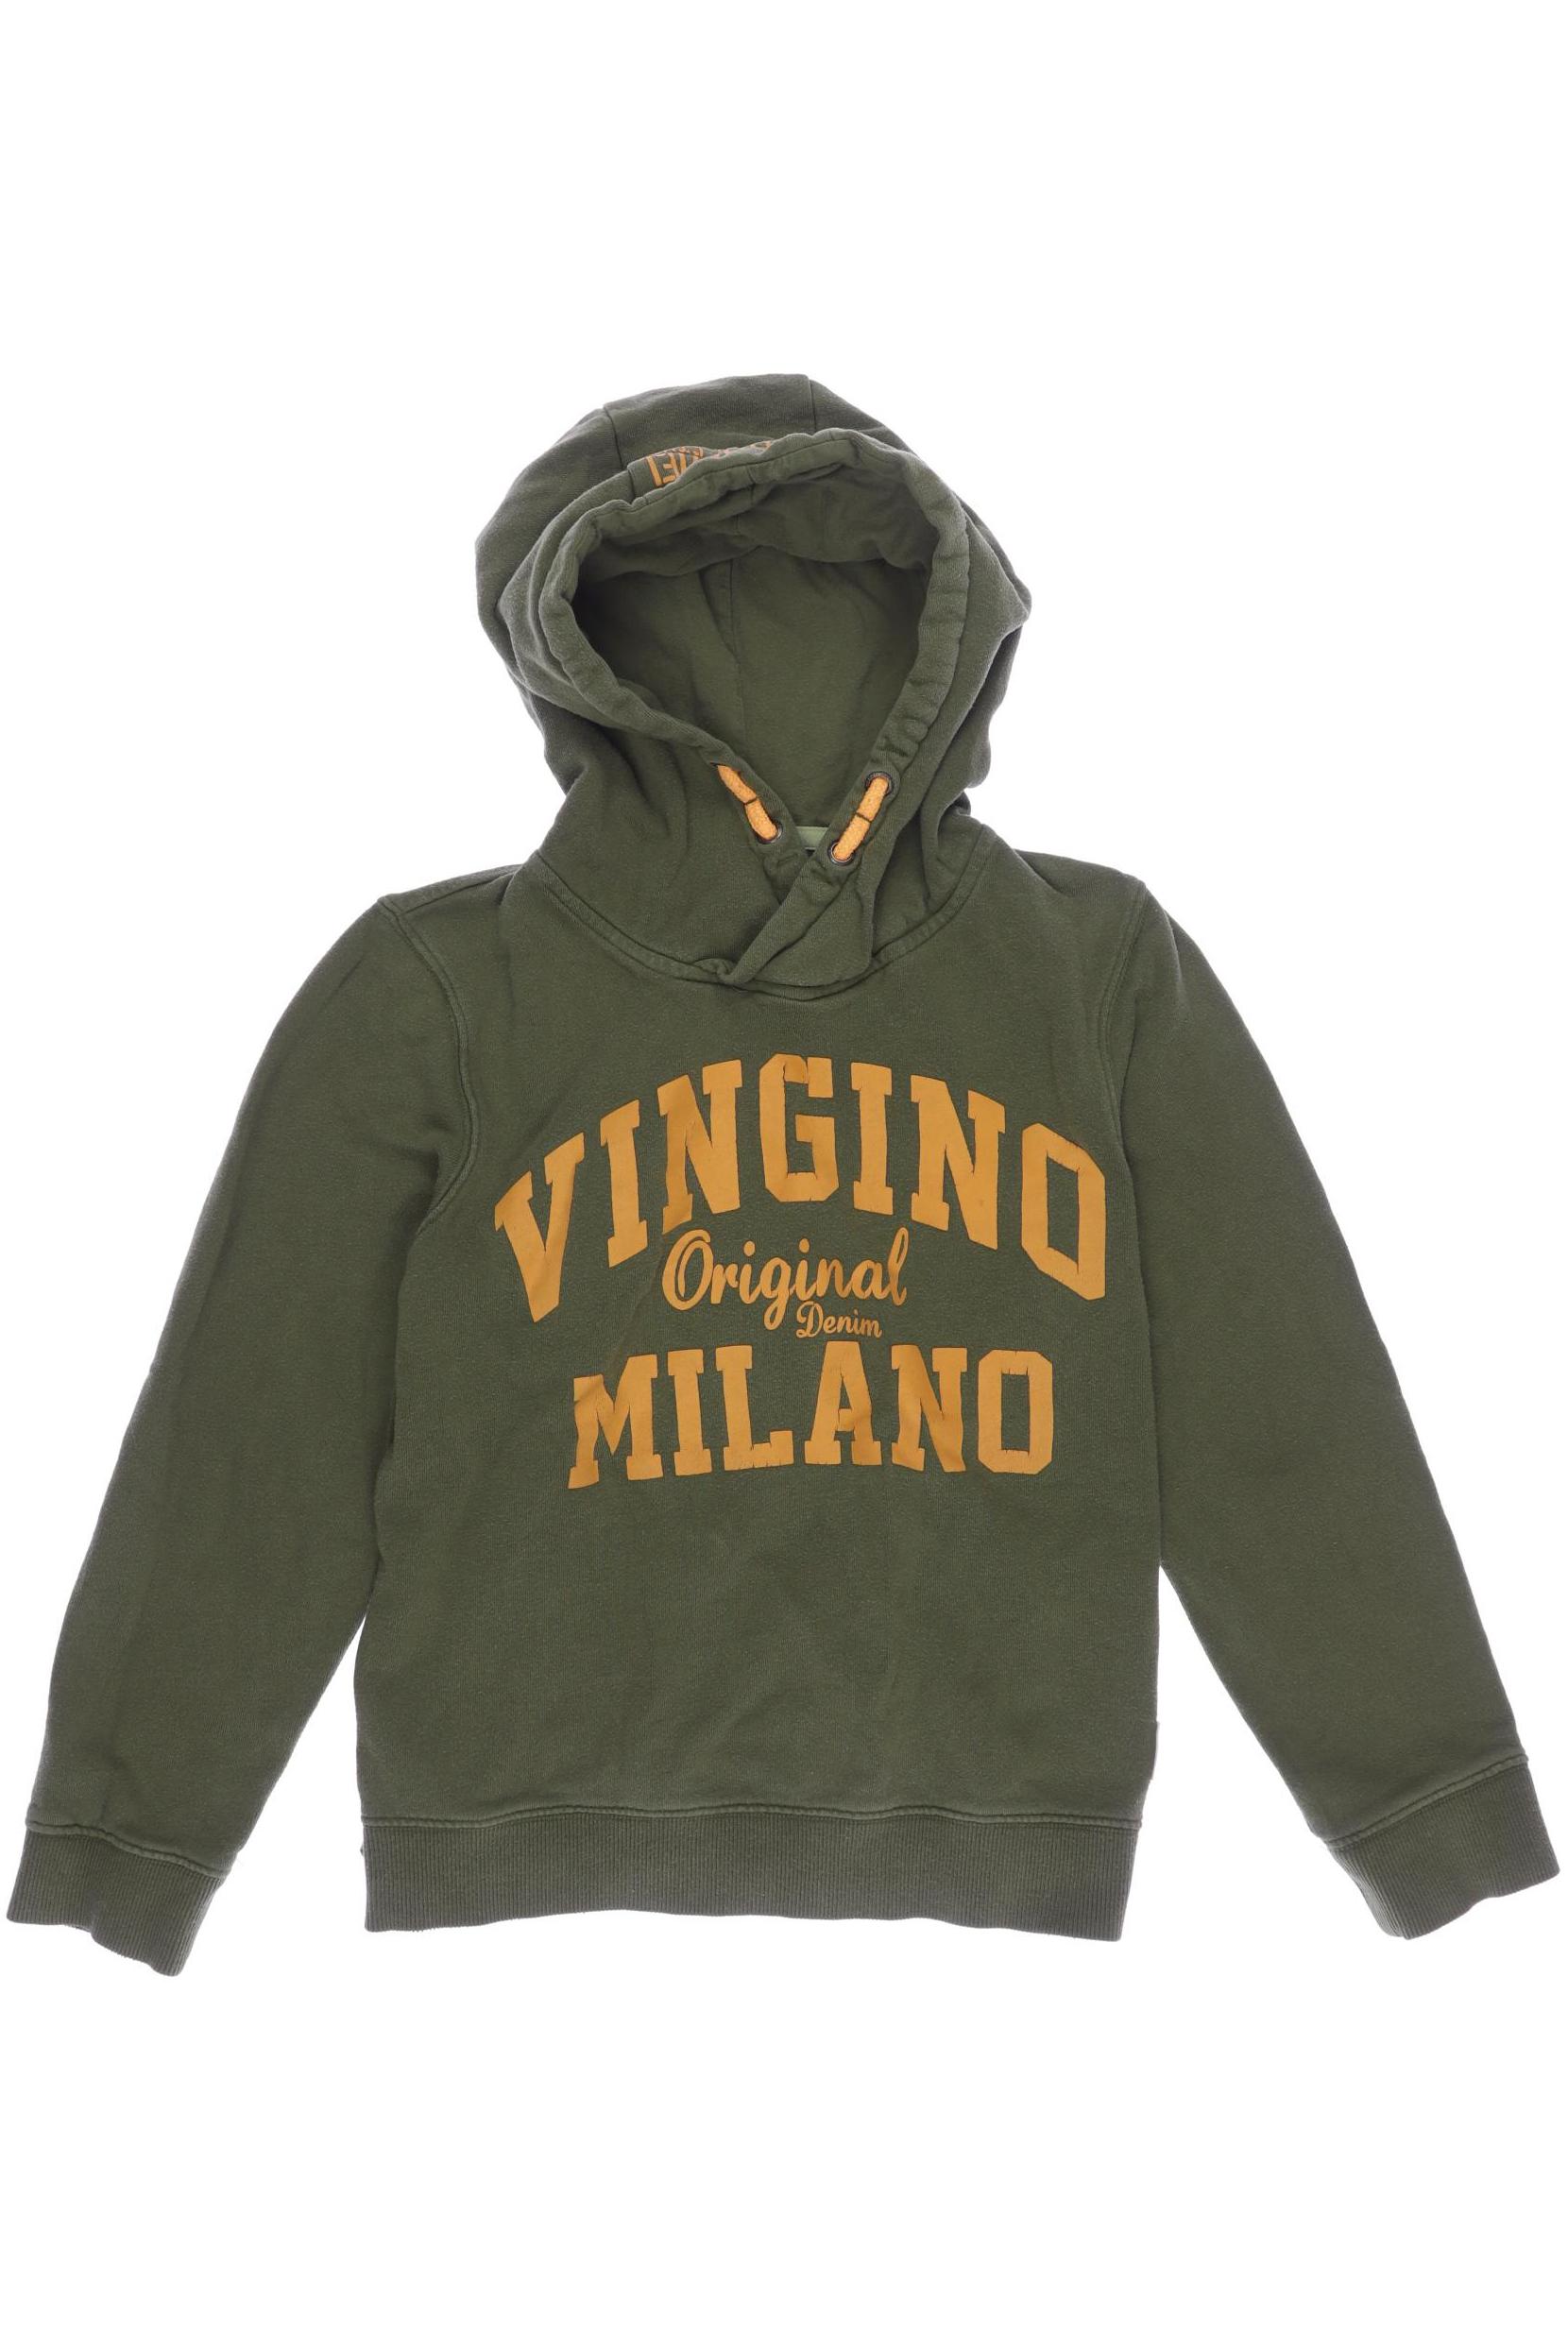 Vingino Herren Hoodies & Sweater, grün, Gr. 152 von VINGINO